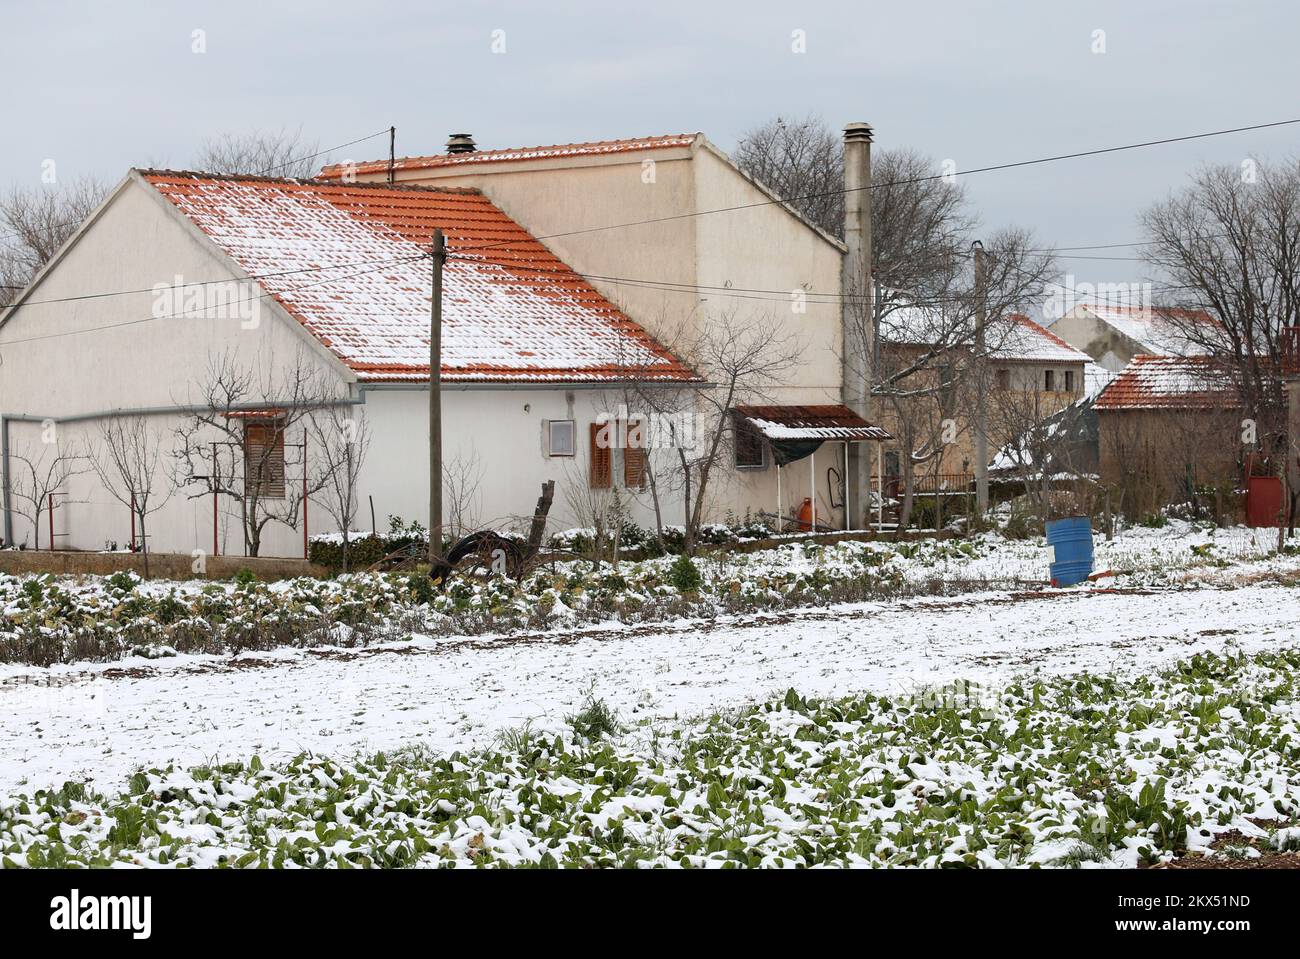 25.02.2018., Croazia, Unesic - atmosfera invernale a Zagora. Unesic e le capanne circostanti sono coperte di neve. Foto: Dusko Jaramaz/PIXSELL Foto Stock